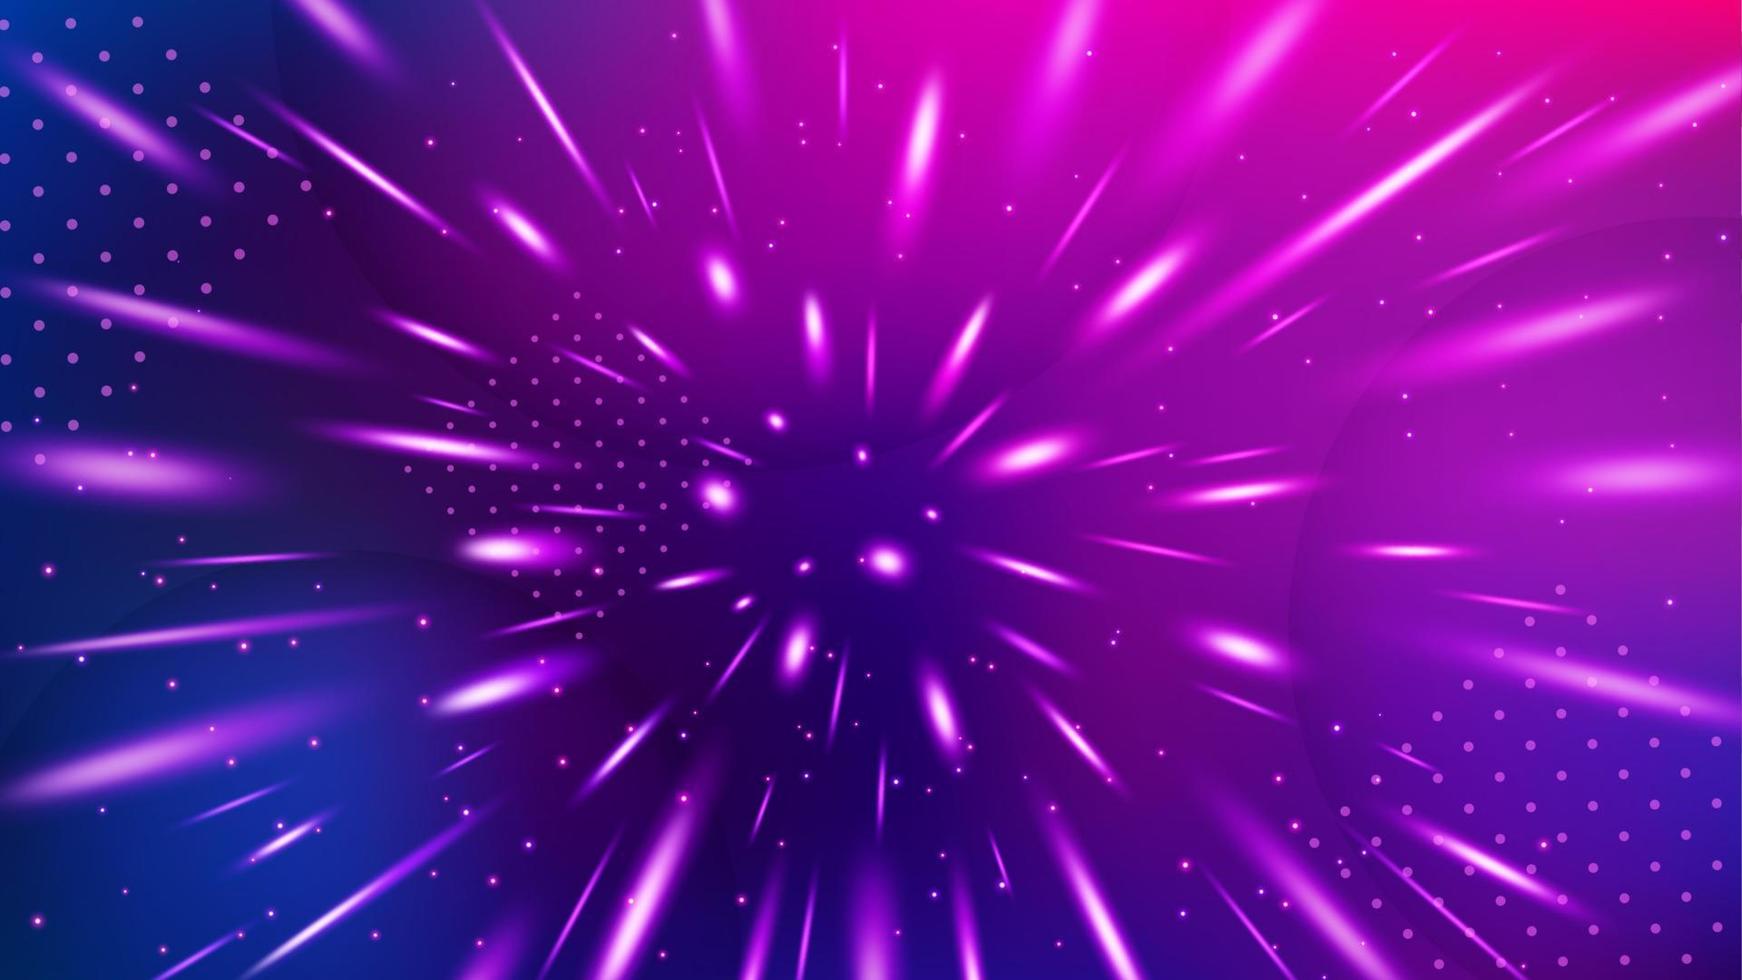 fundo de chuva de partículas de glitter violeta, ilustração vetorial widescreen vetor